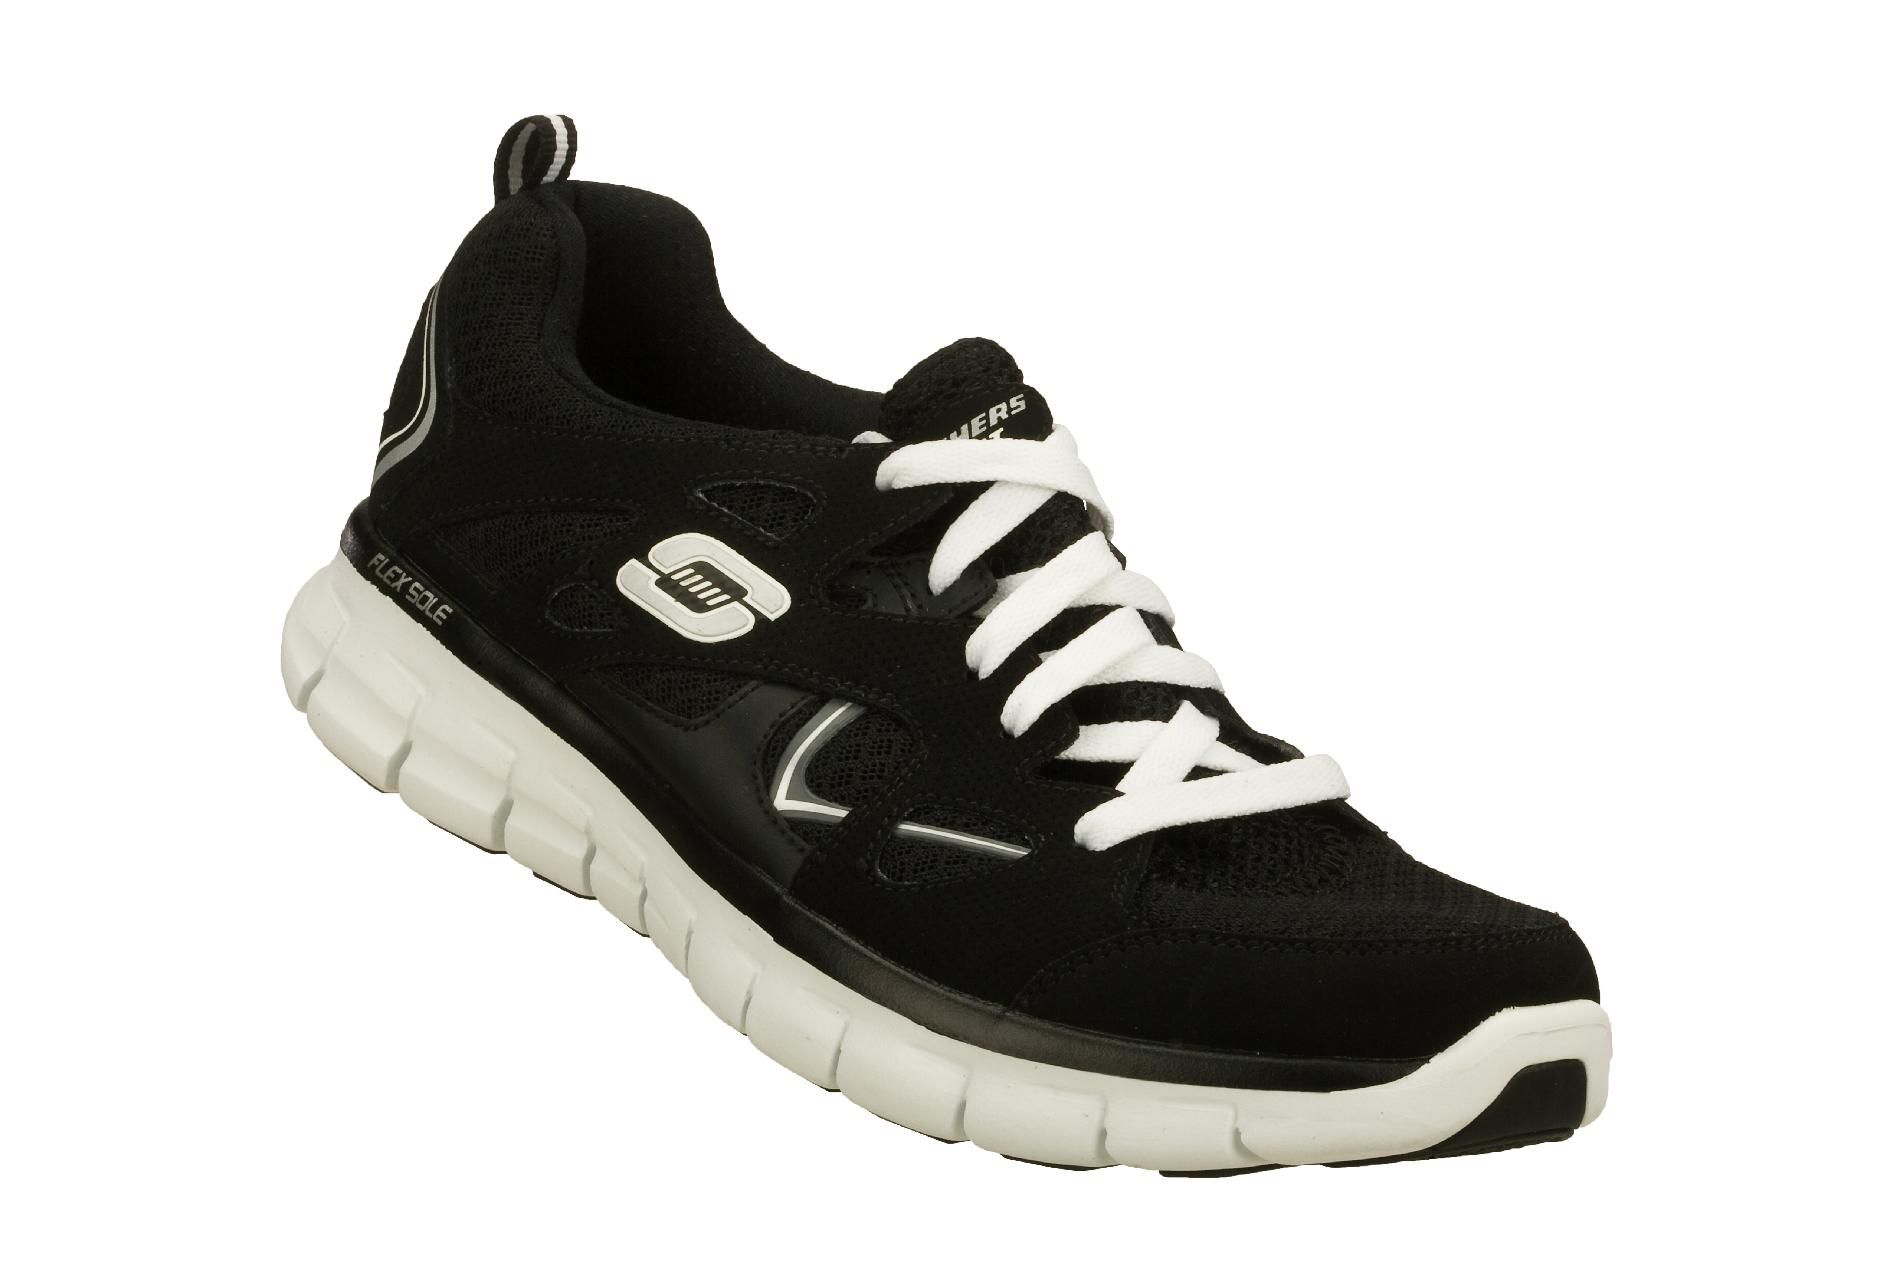 Skechers Women's Ultimatum Athletic Shoe - Black/White